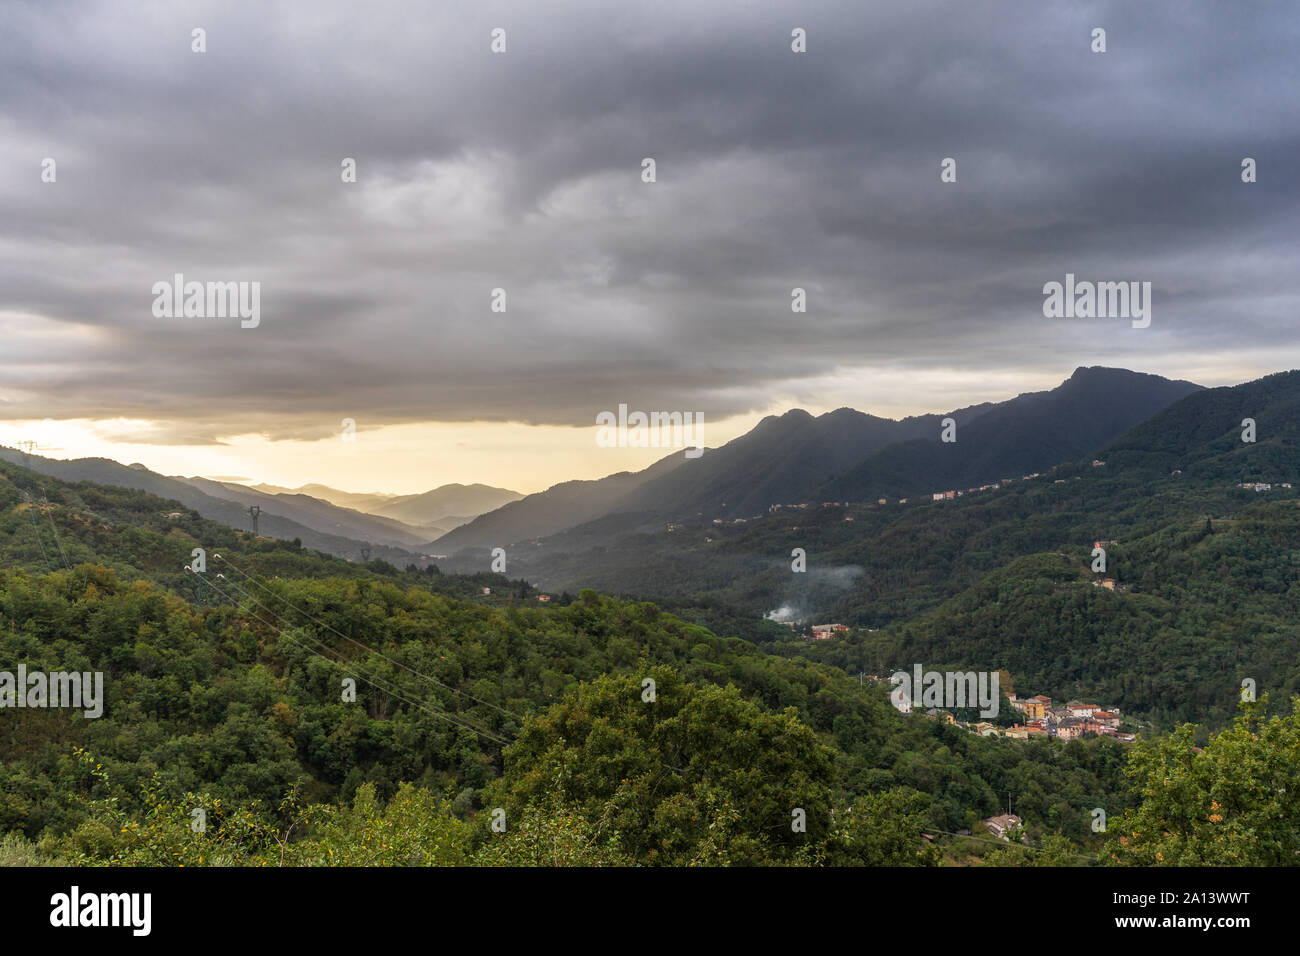 Landschaft der Apenninen mit Dörfern und Grünen dichten Wald in Ligurien, Italien Stockfoto